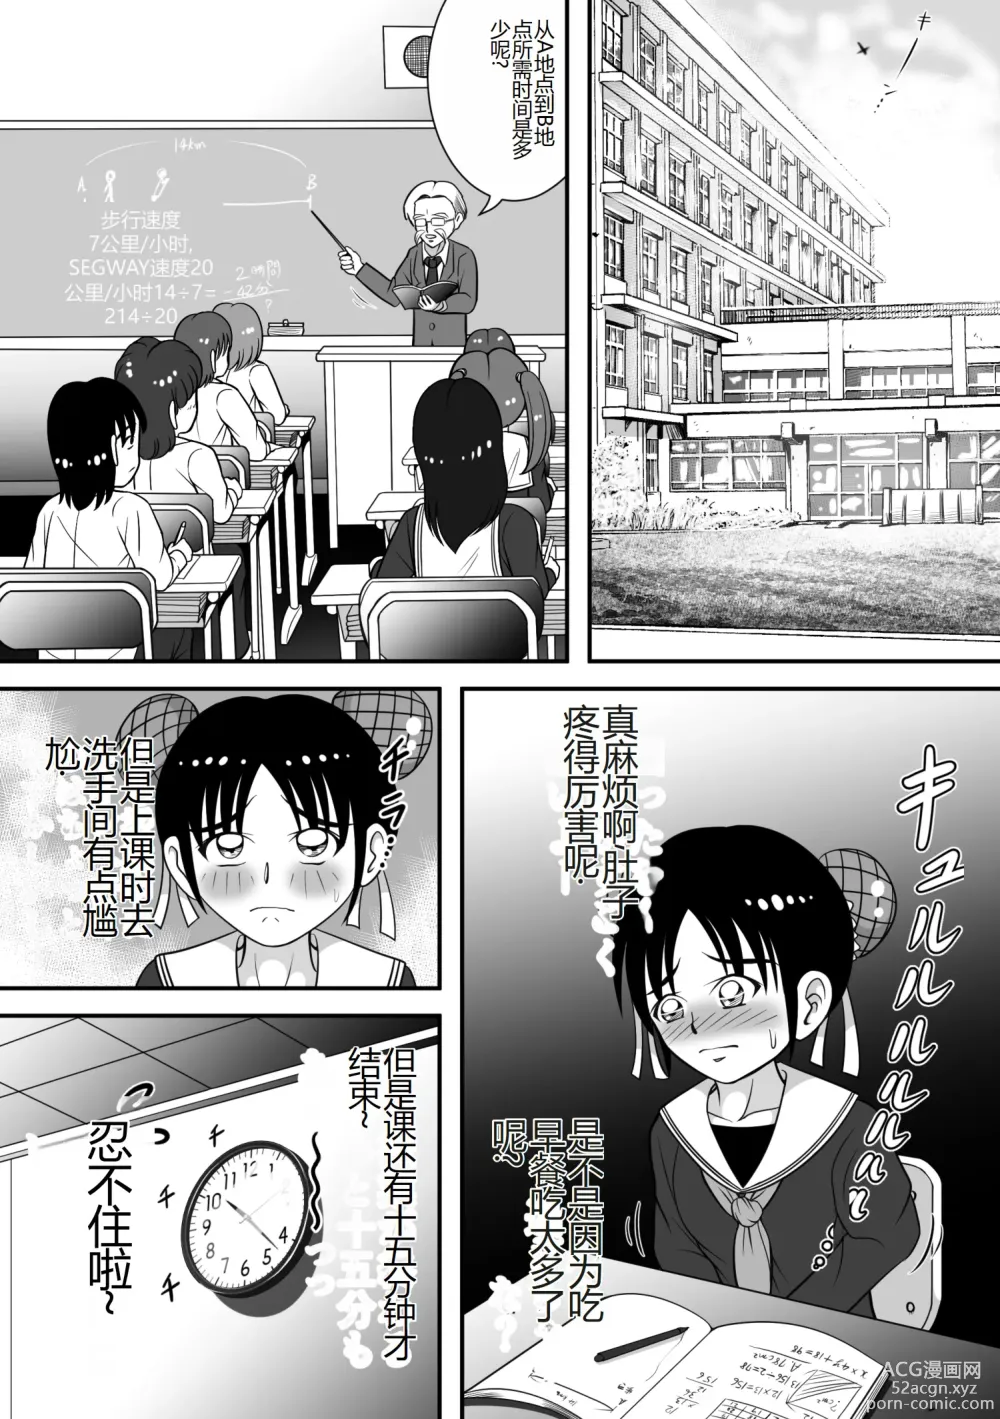 Page 3 of doujinshi 报告老师,我憋不住了